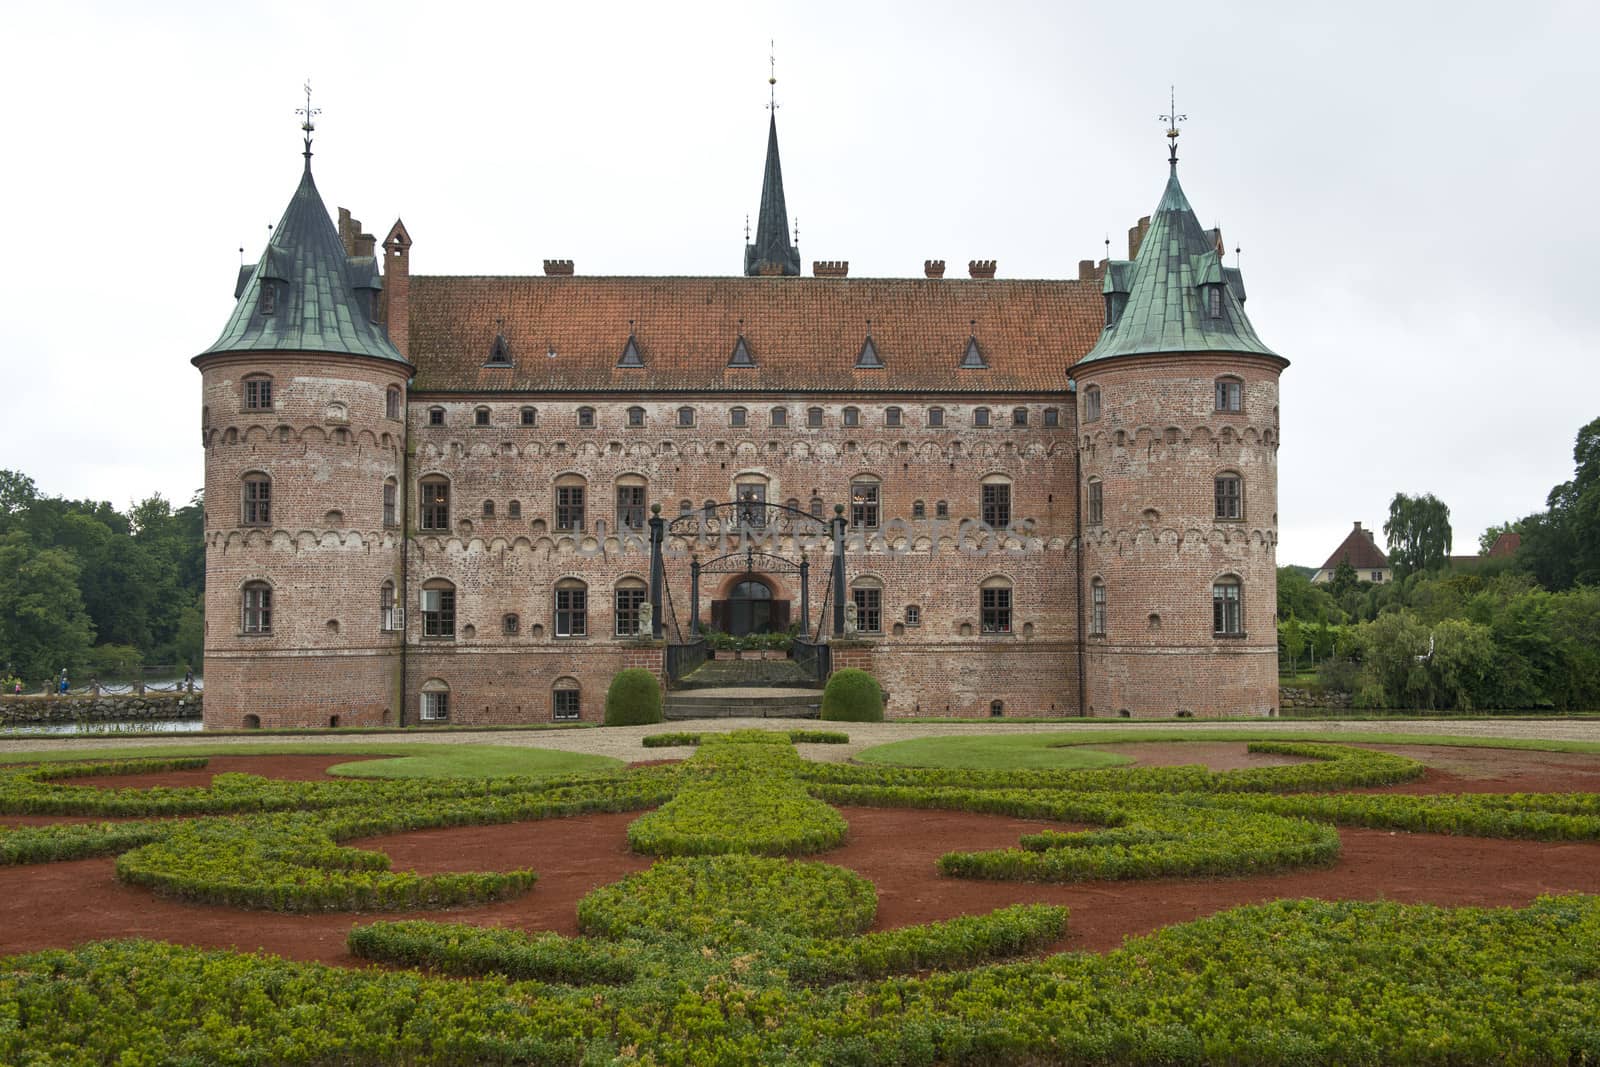 The renaissance castle of Egeskov in the island of Funen, Denmark